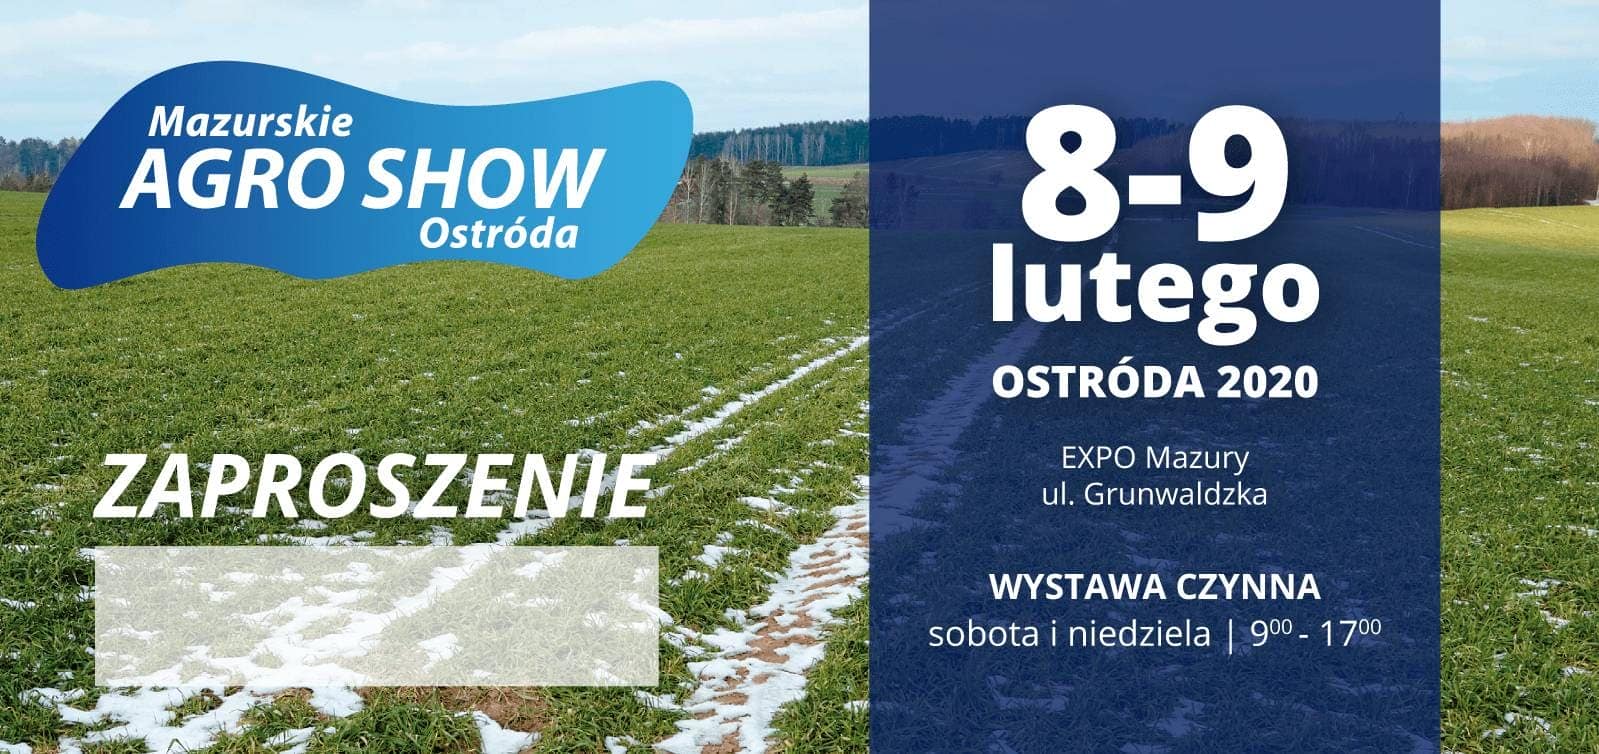 Zaproszenie Mazurskie AGRO SHOW Ostróda